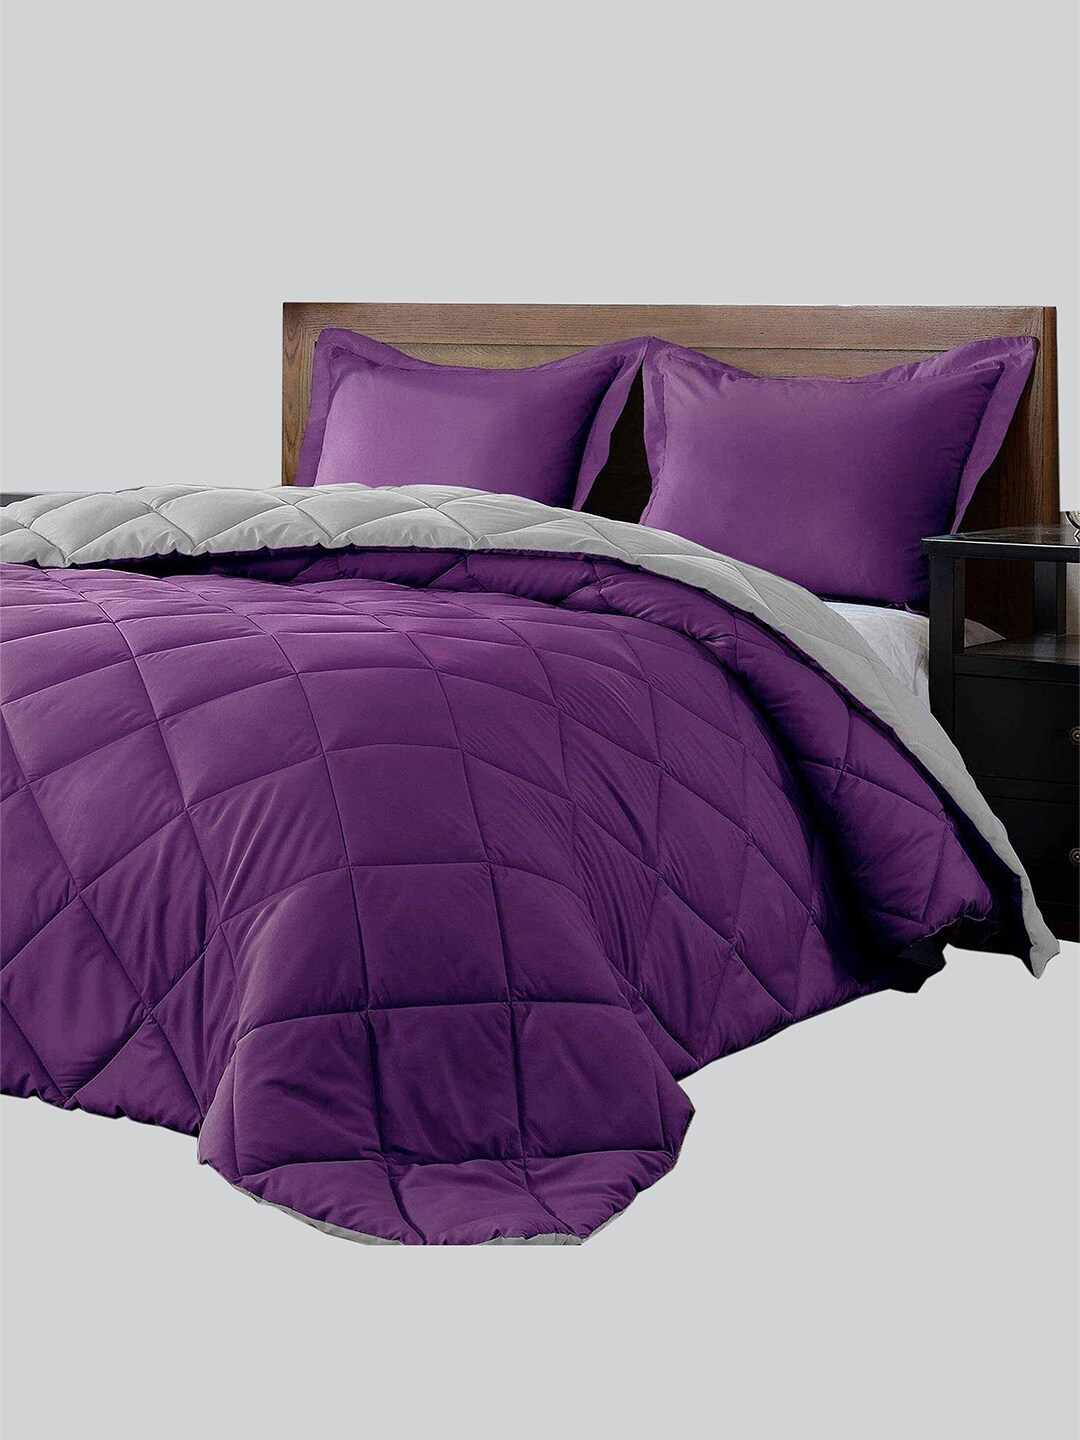 RAASO Purple & Grey Reversible Microfiber AC Room Single Bed Blanket Price in India